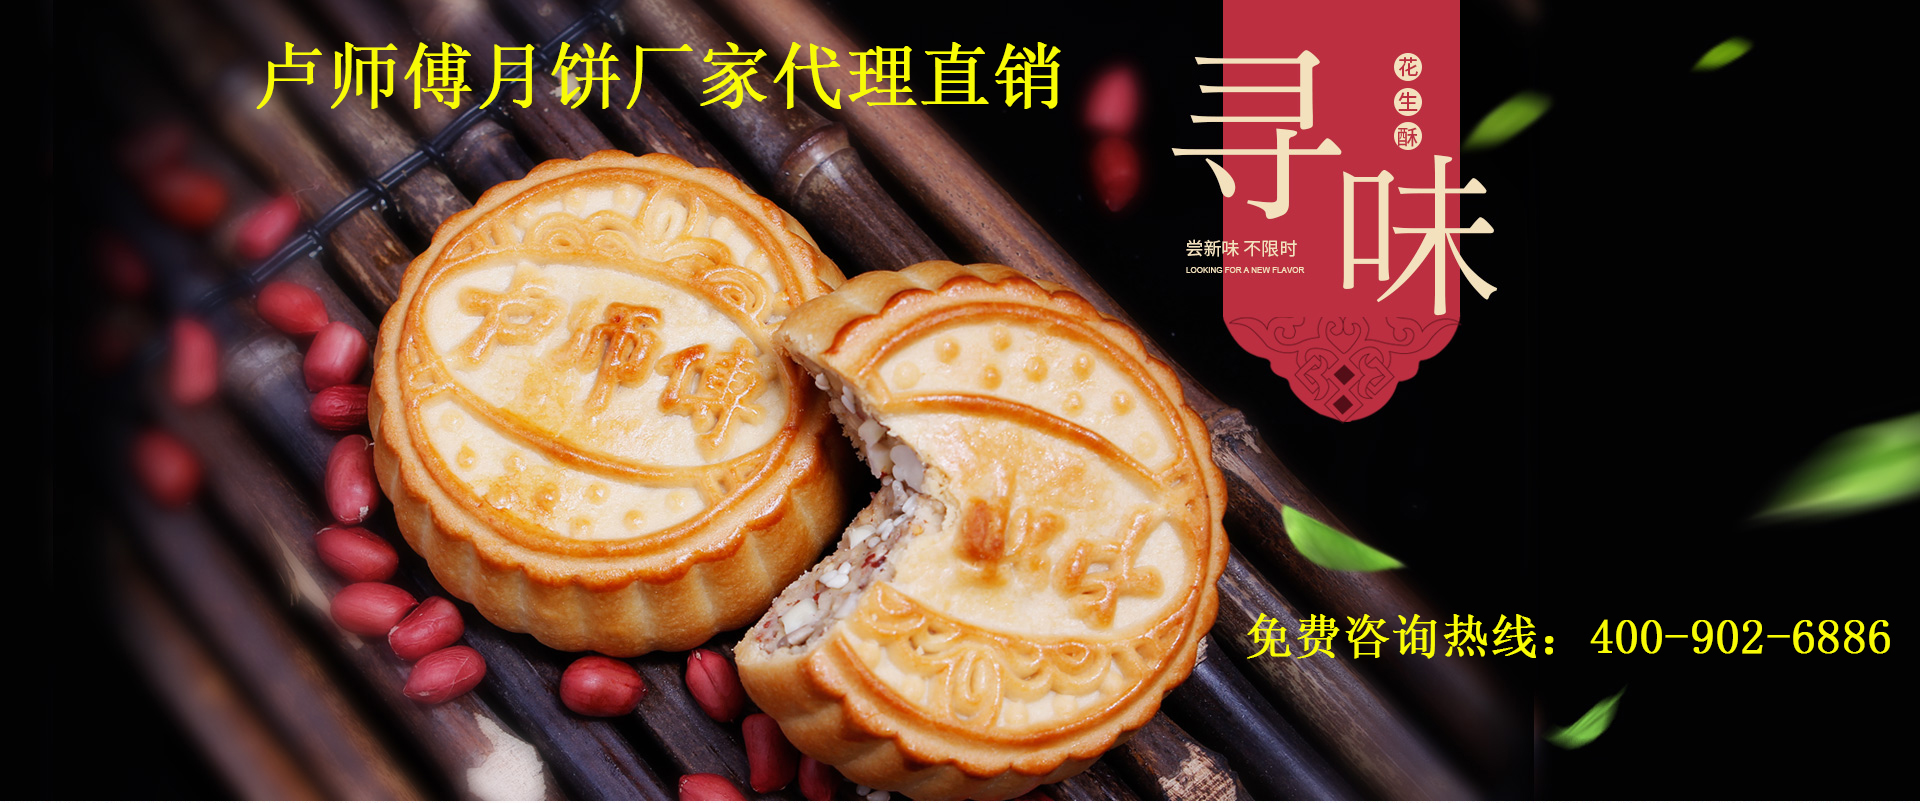 卢师傅月饼,家和万事兴月饼礼盒,郑州卢师傅月饼厂家批发